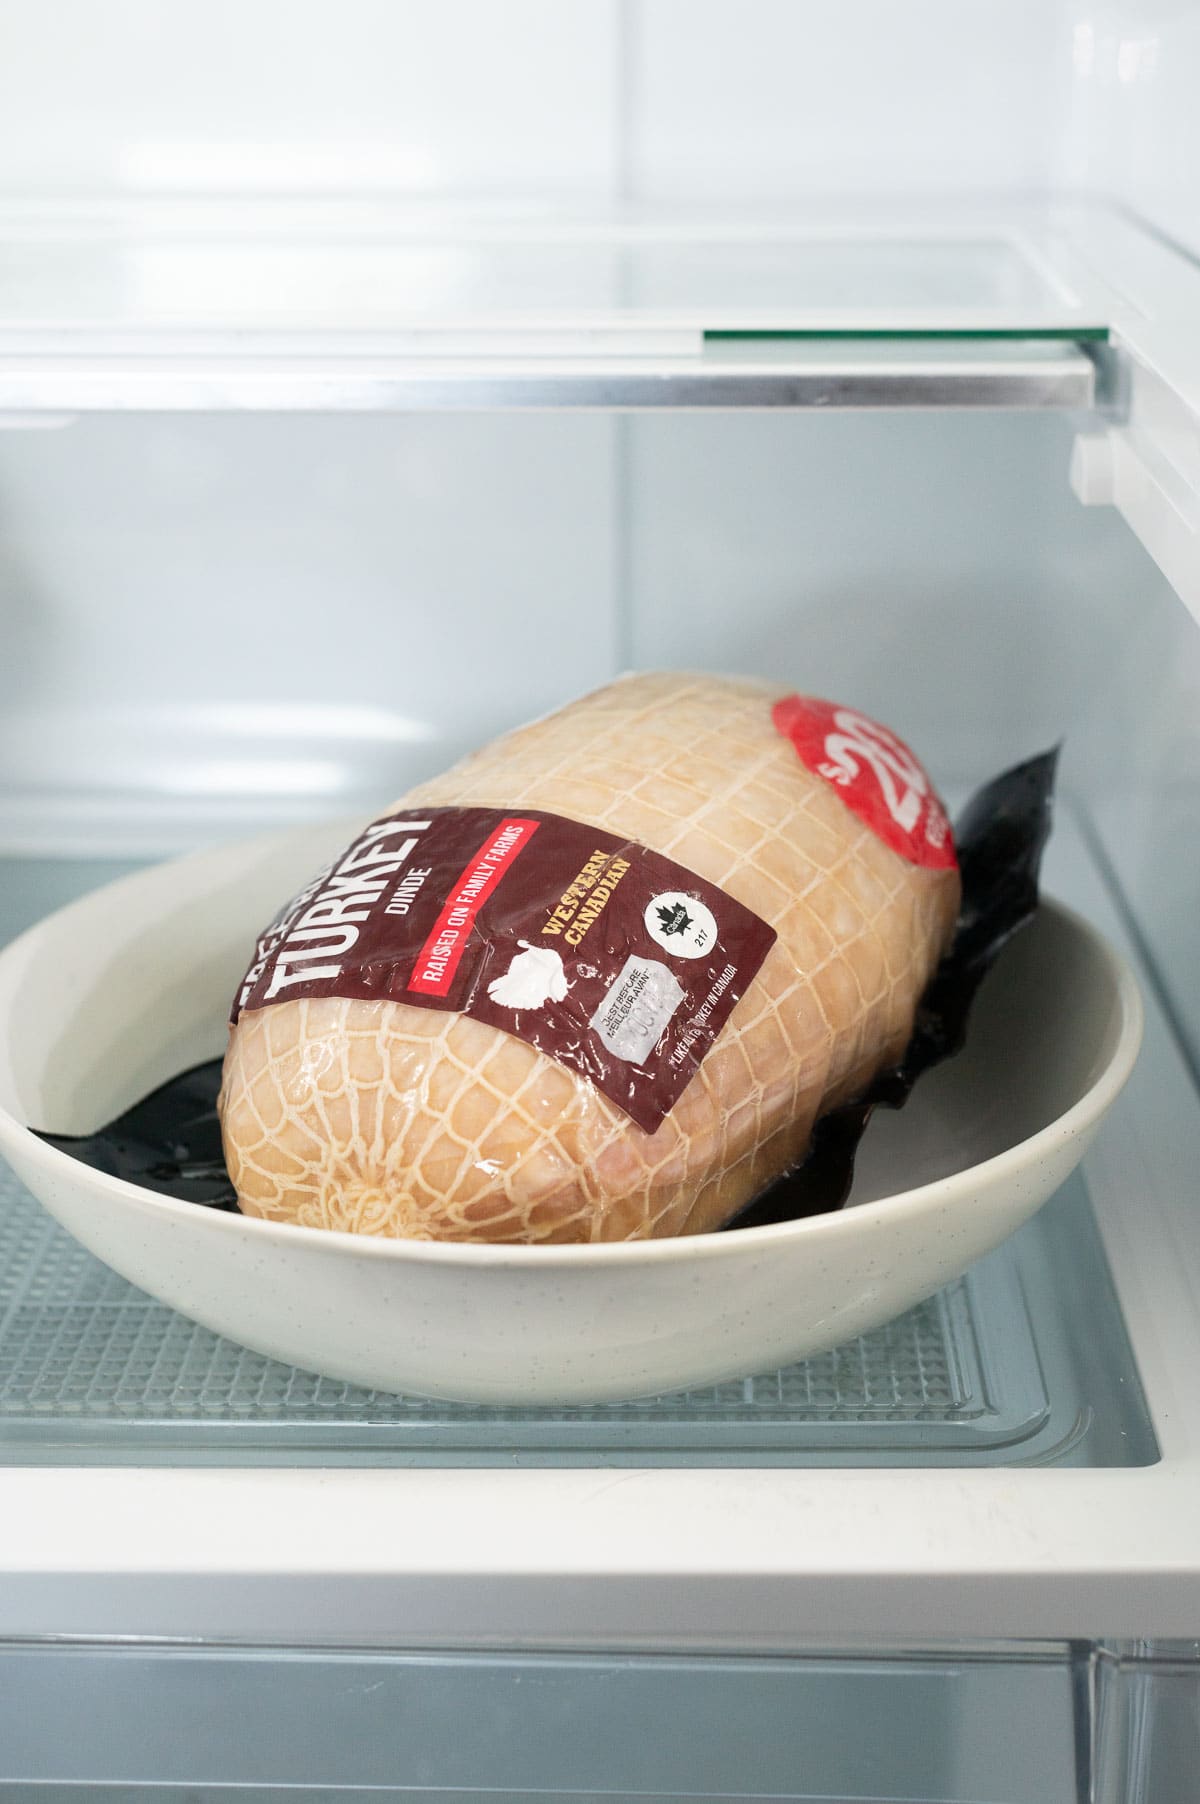 Frozen turkey breast roast in original wrapper on a plate in the fridge.